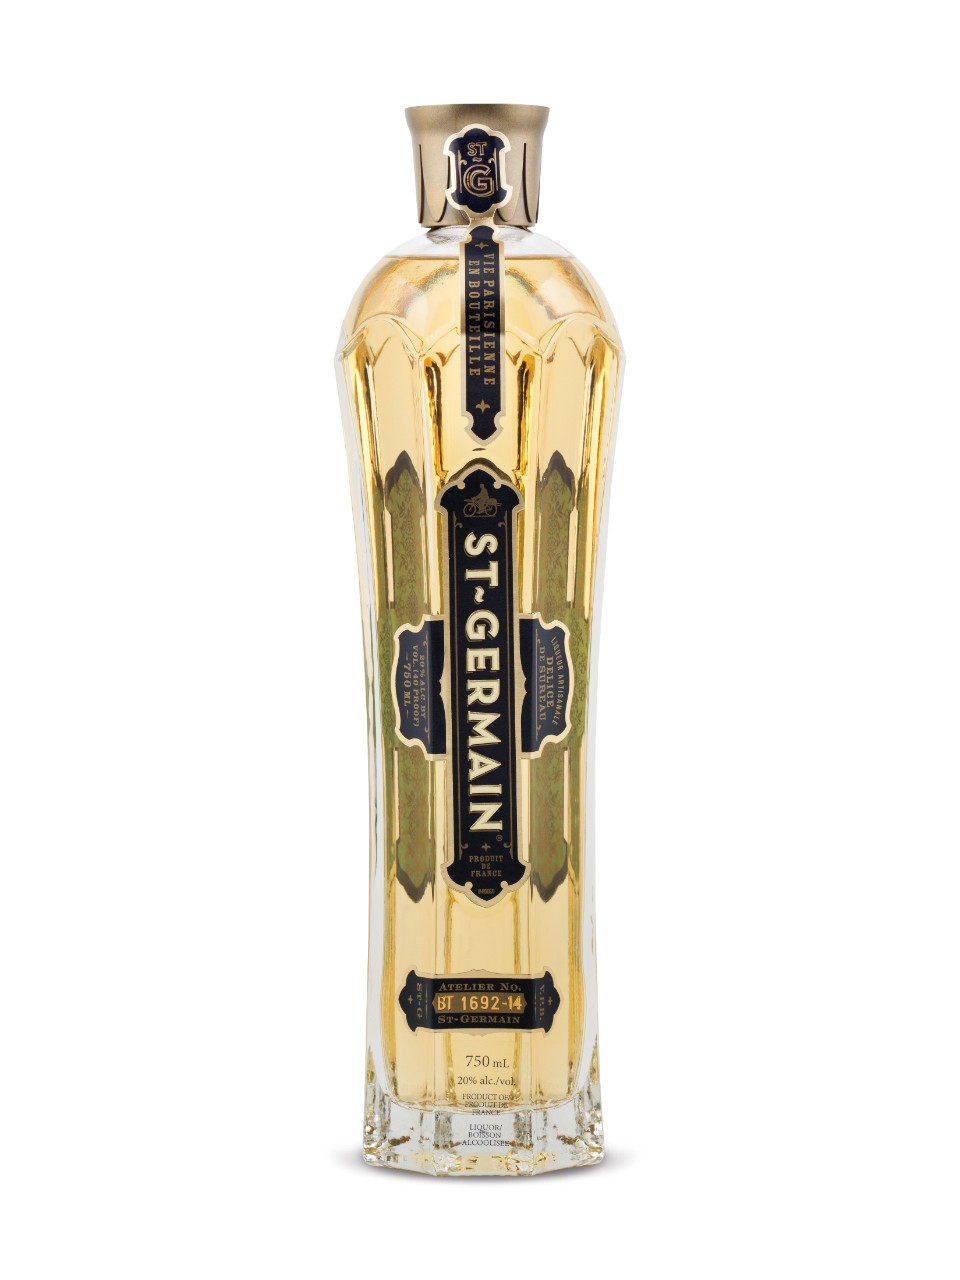 St. Germain Elderflower Liqueur – 750ml